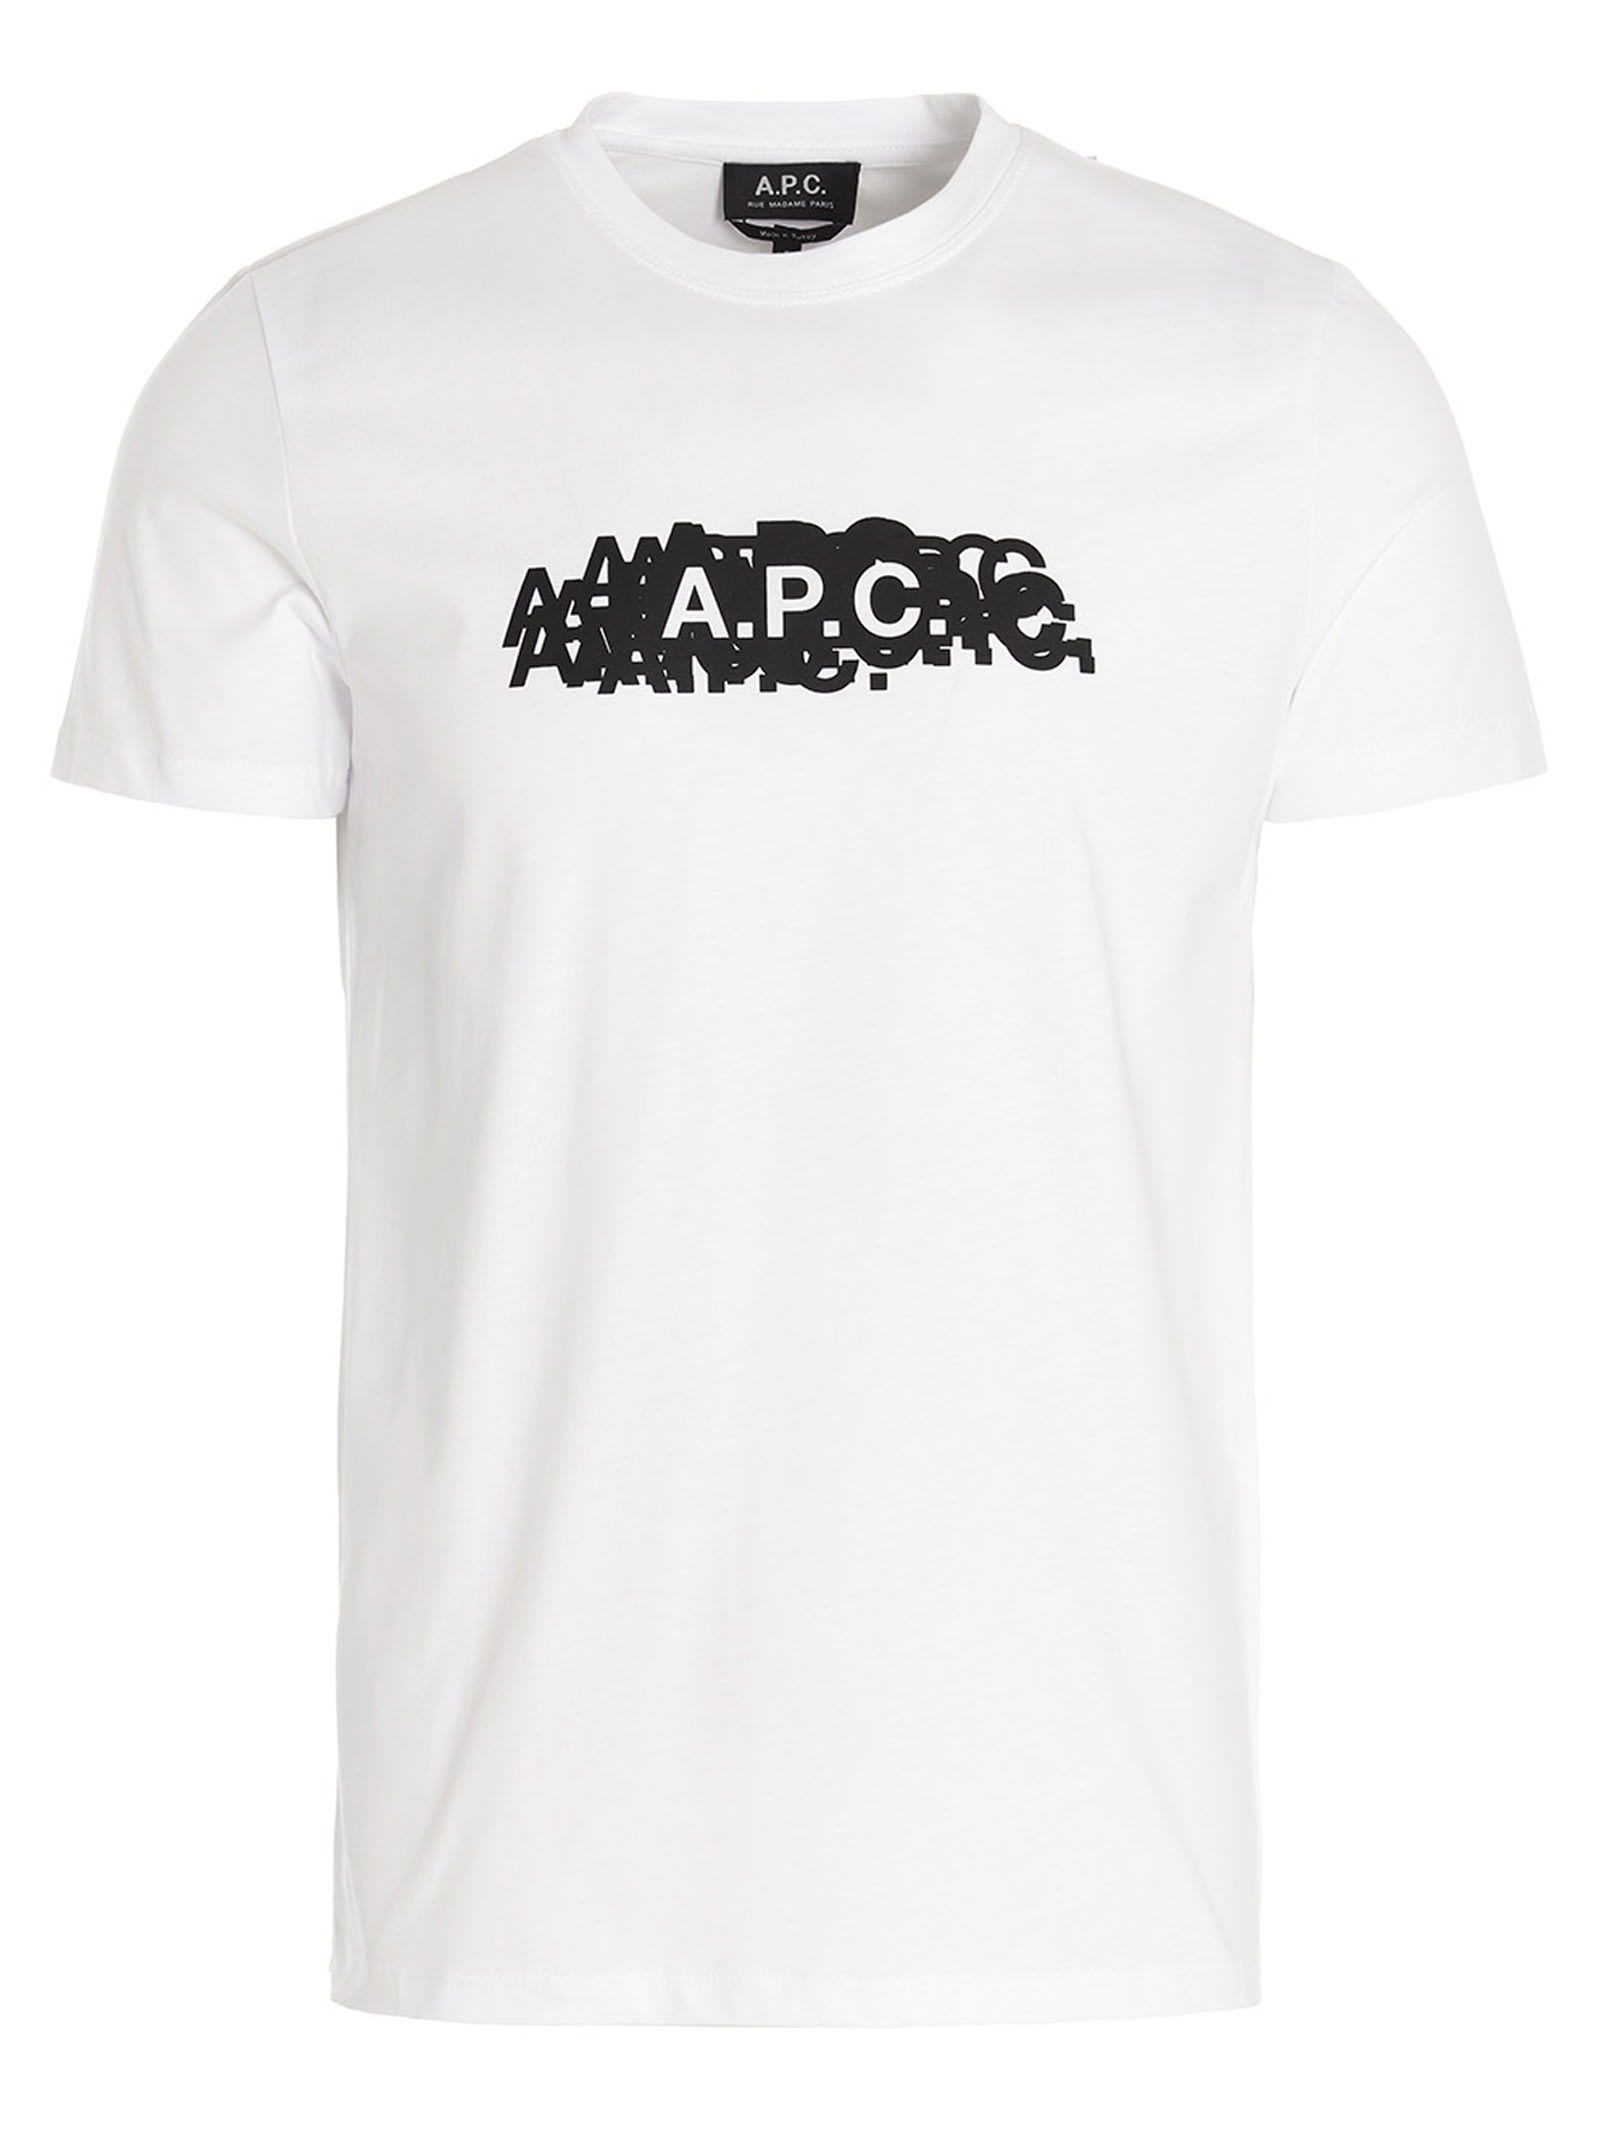 A.P.C. koraku T-shirt